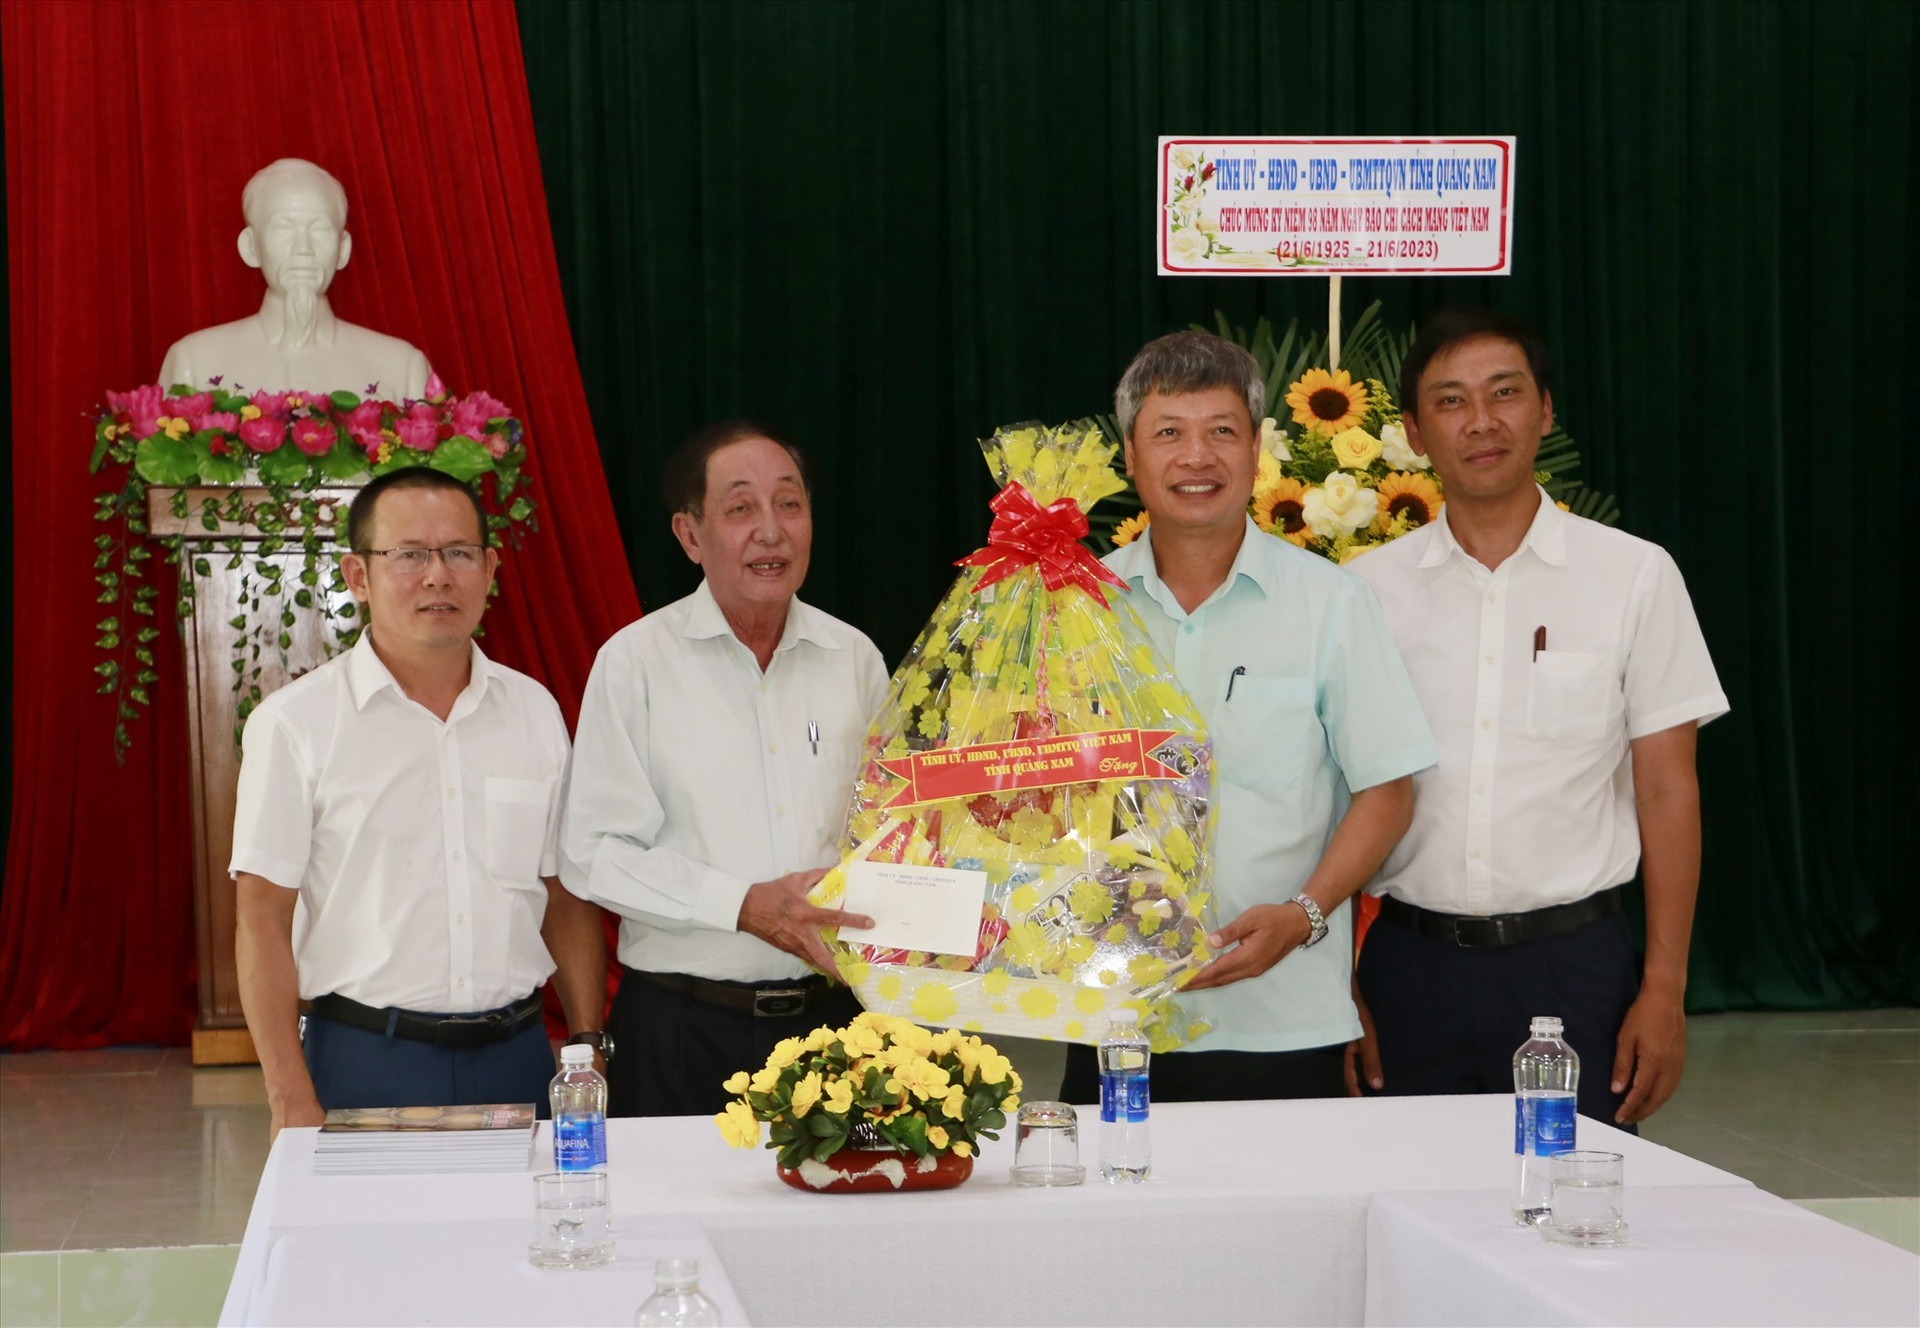 Sáng cùng ngày, Phó Chủ tịch UBND tỉnh Hồ Quang Bửu cũng đã đến thăm, tặng hoa và quà tại Tạp chí Đất Quảng. Ảnh: T.C